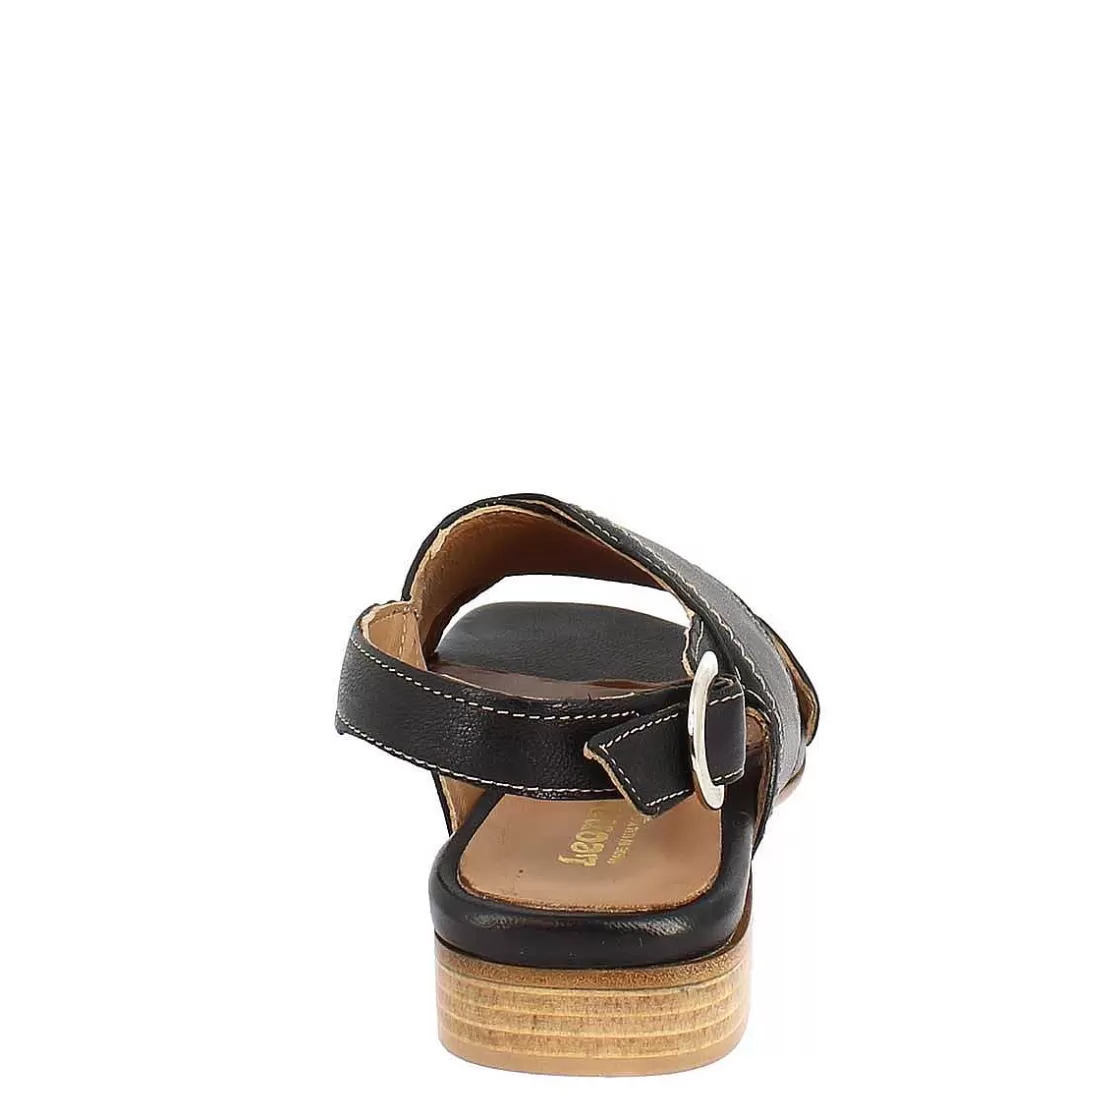 Leonardo Women'S Handmade Slingback Flat Sandals In Black Leather. Cheap